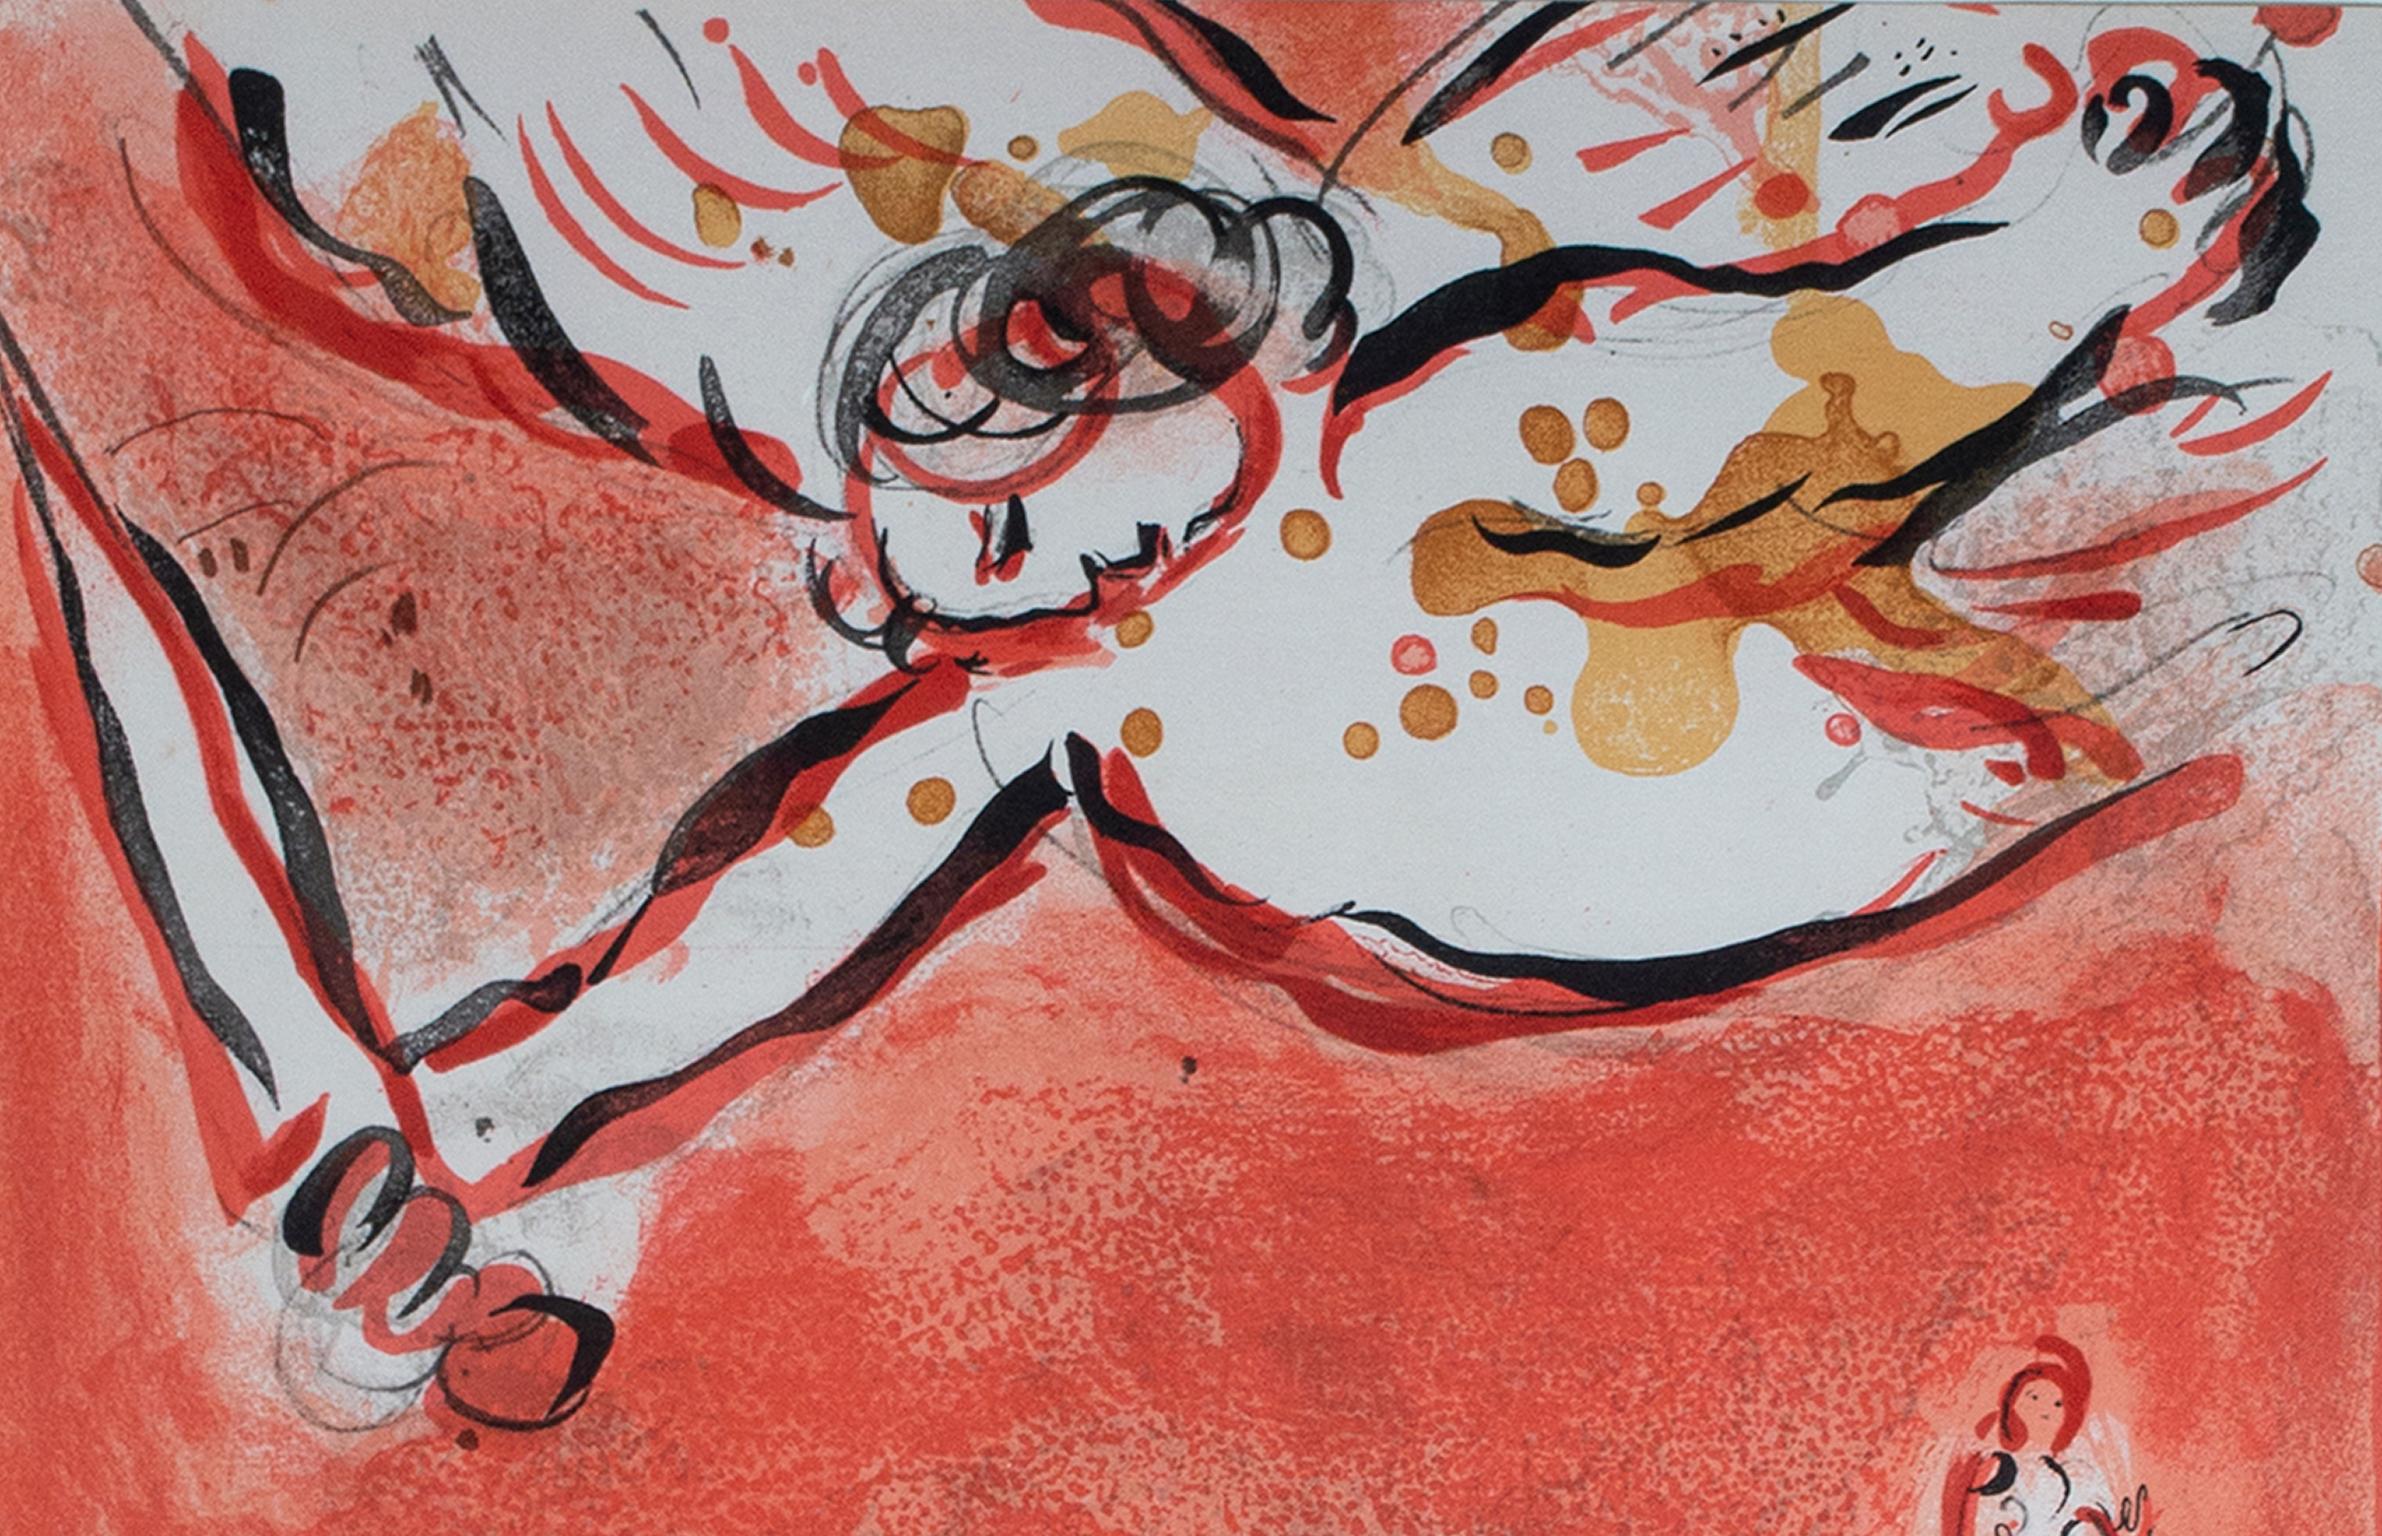 « Le Visage d'Isral (Le visage d'Israël), M 231 », lithographie originale en couleur - Print de Marc Chagall